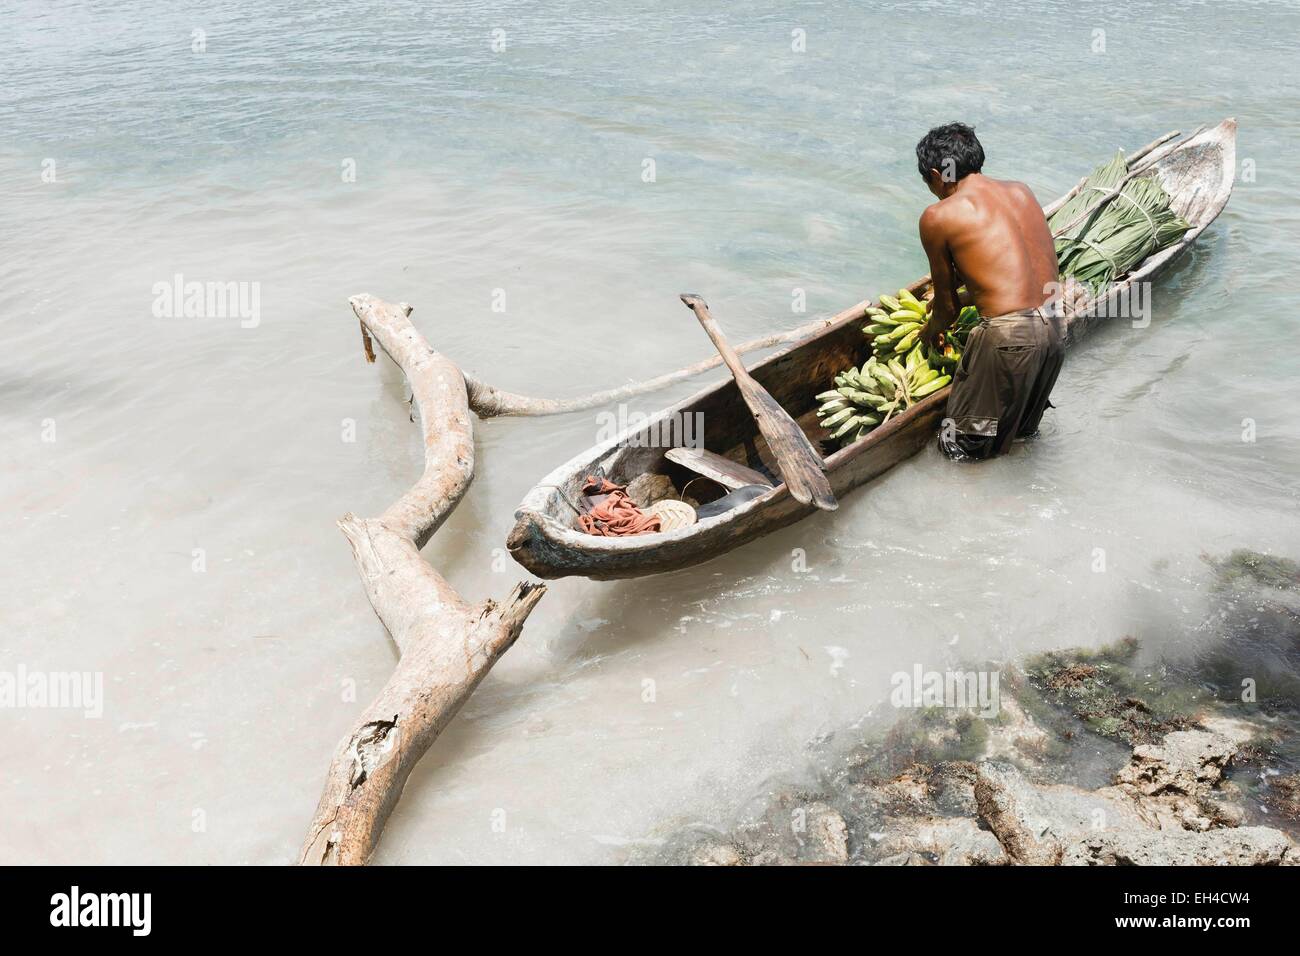 Panama, San Blas arcipelago, Kuna Yala, Kune comunità indigena, pescatore della tribù Kuna nella sua barca che porta i frutti del suo raccolto Foto Stock